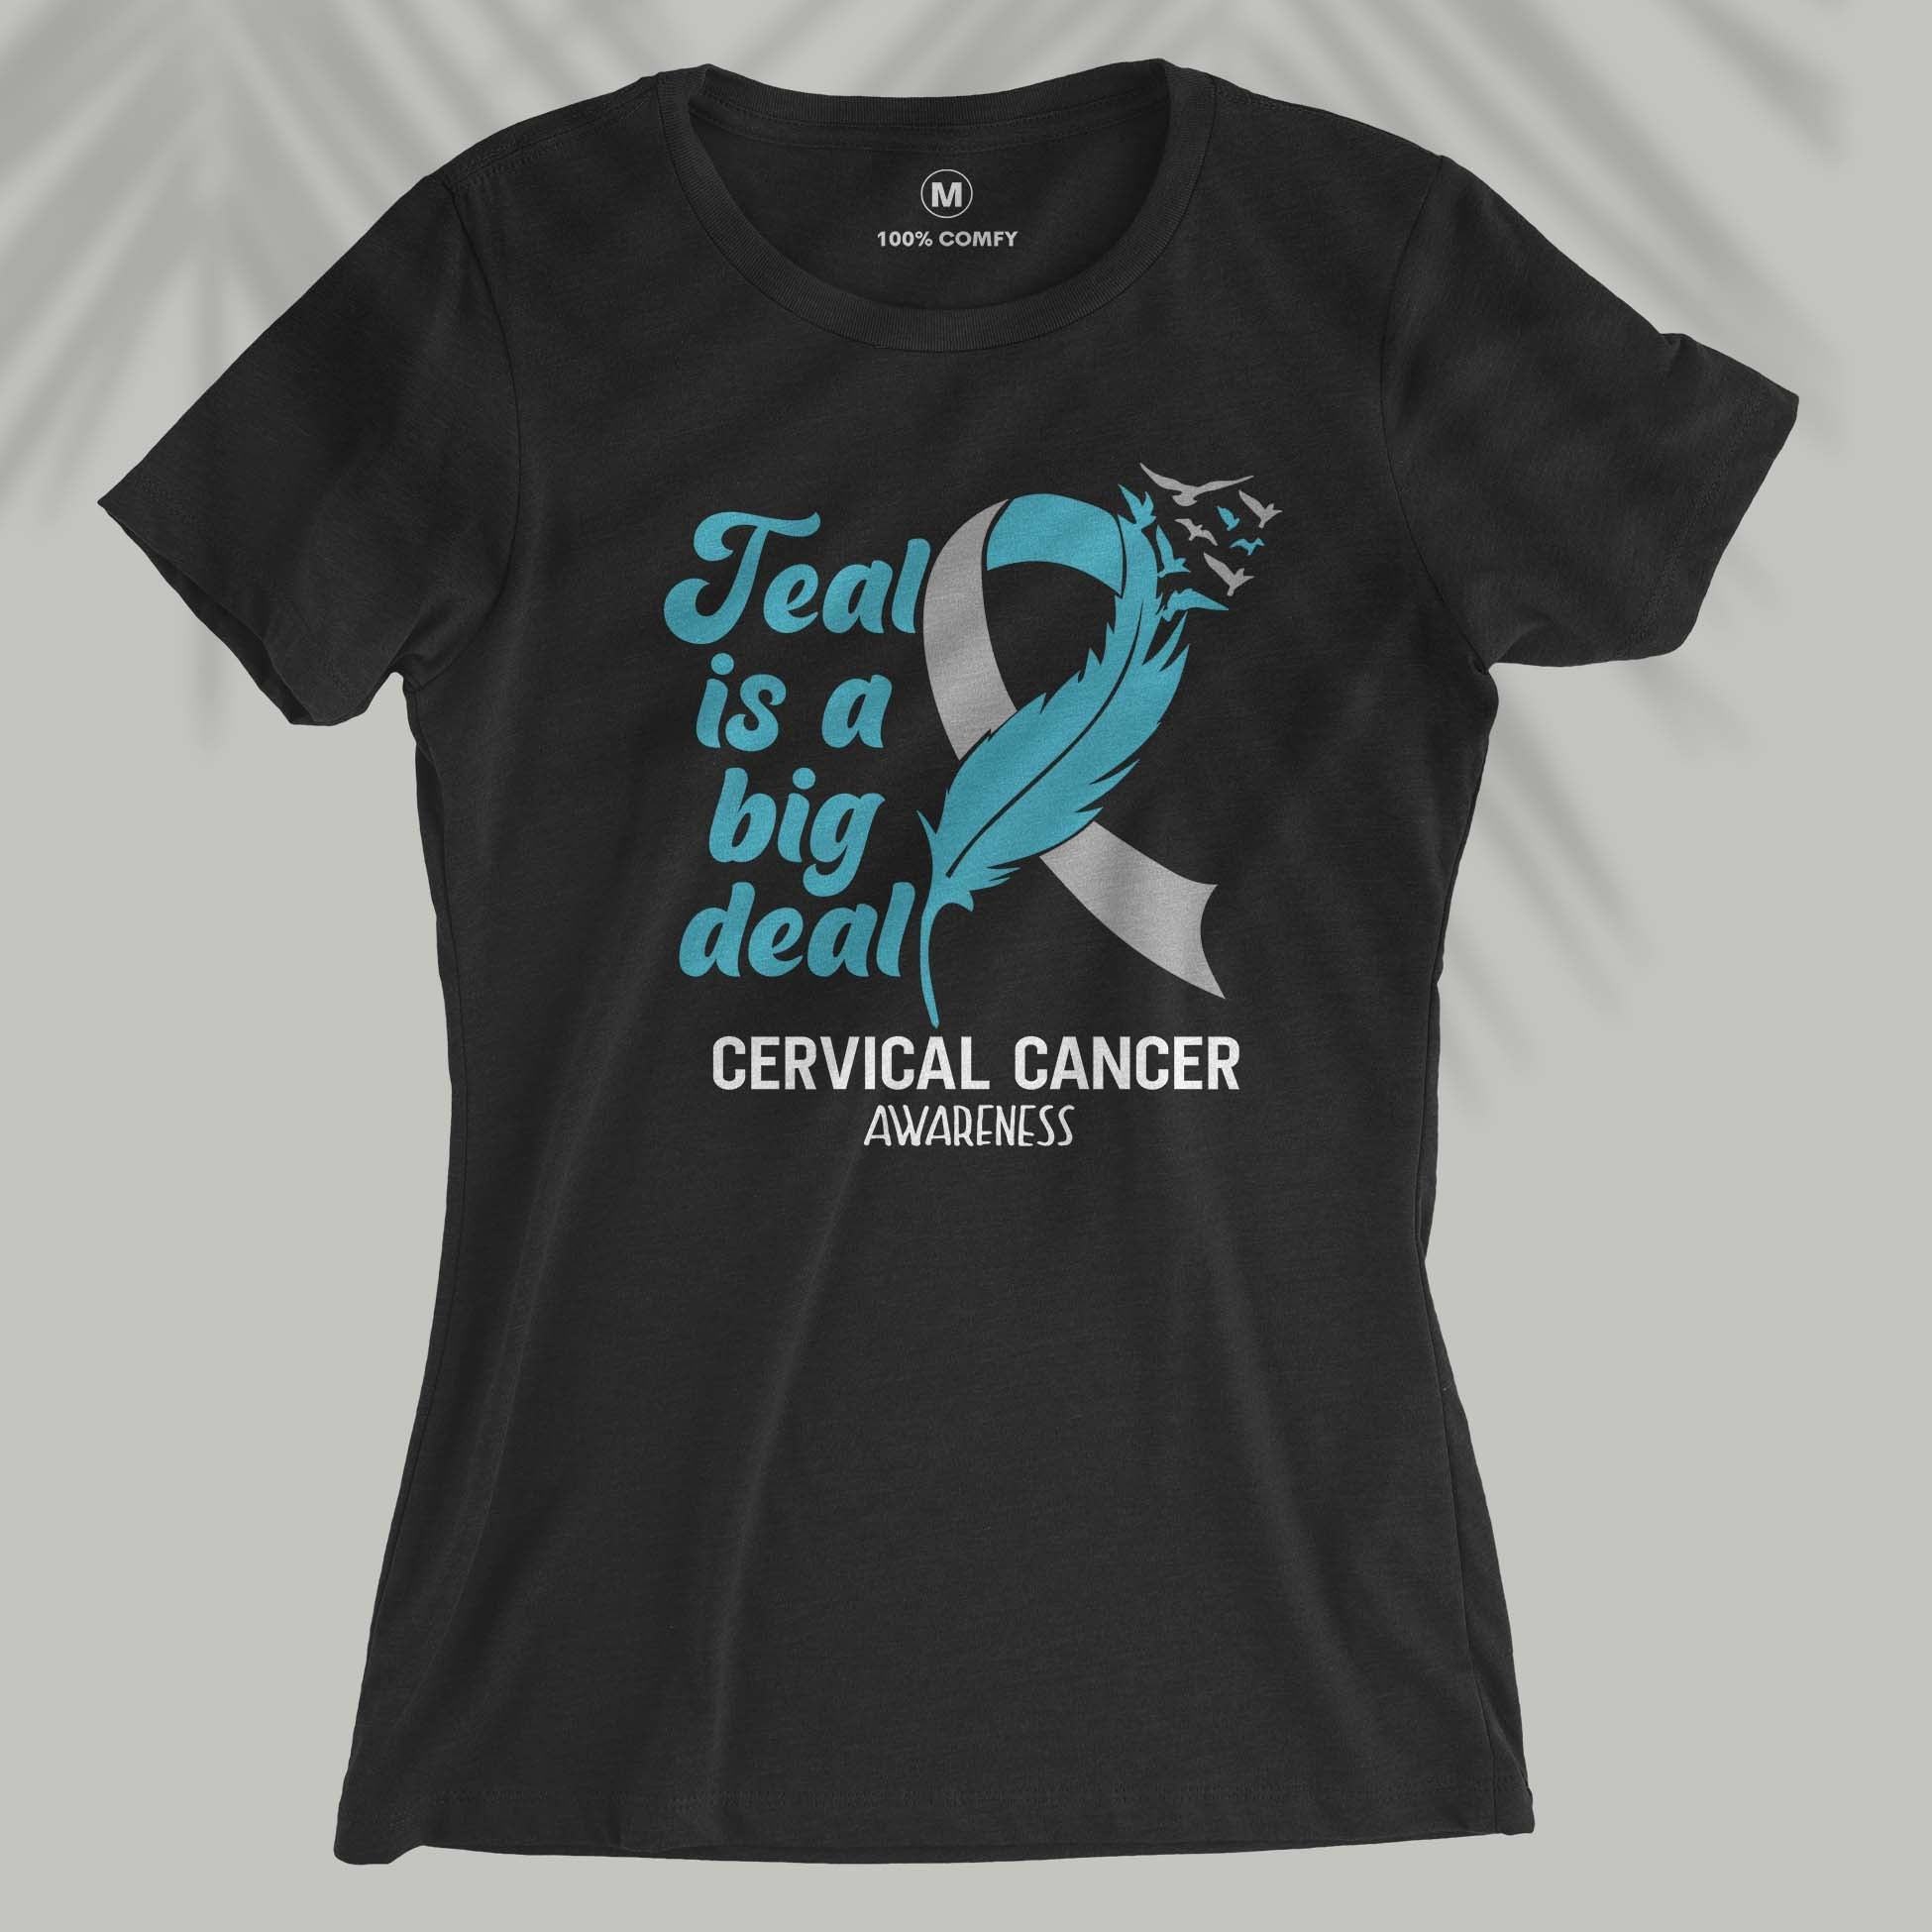 Teal Is A Big Deal - Cervical Cancer Awareness - Women T-shirt